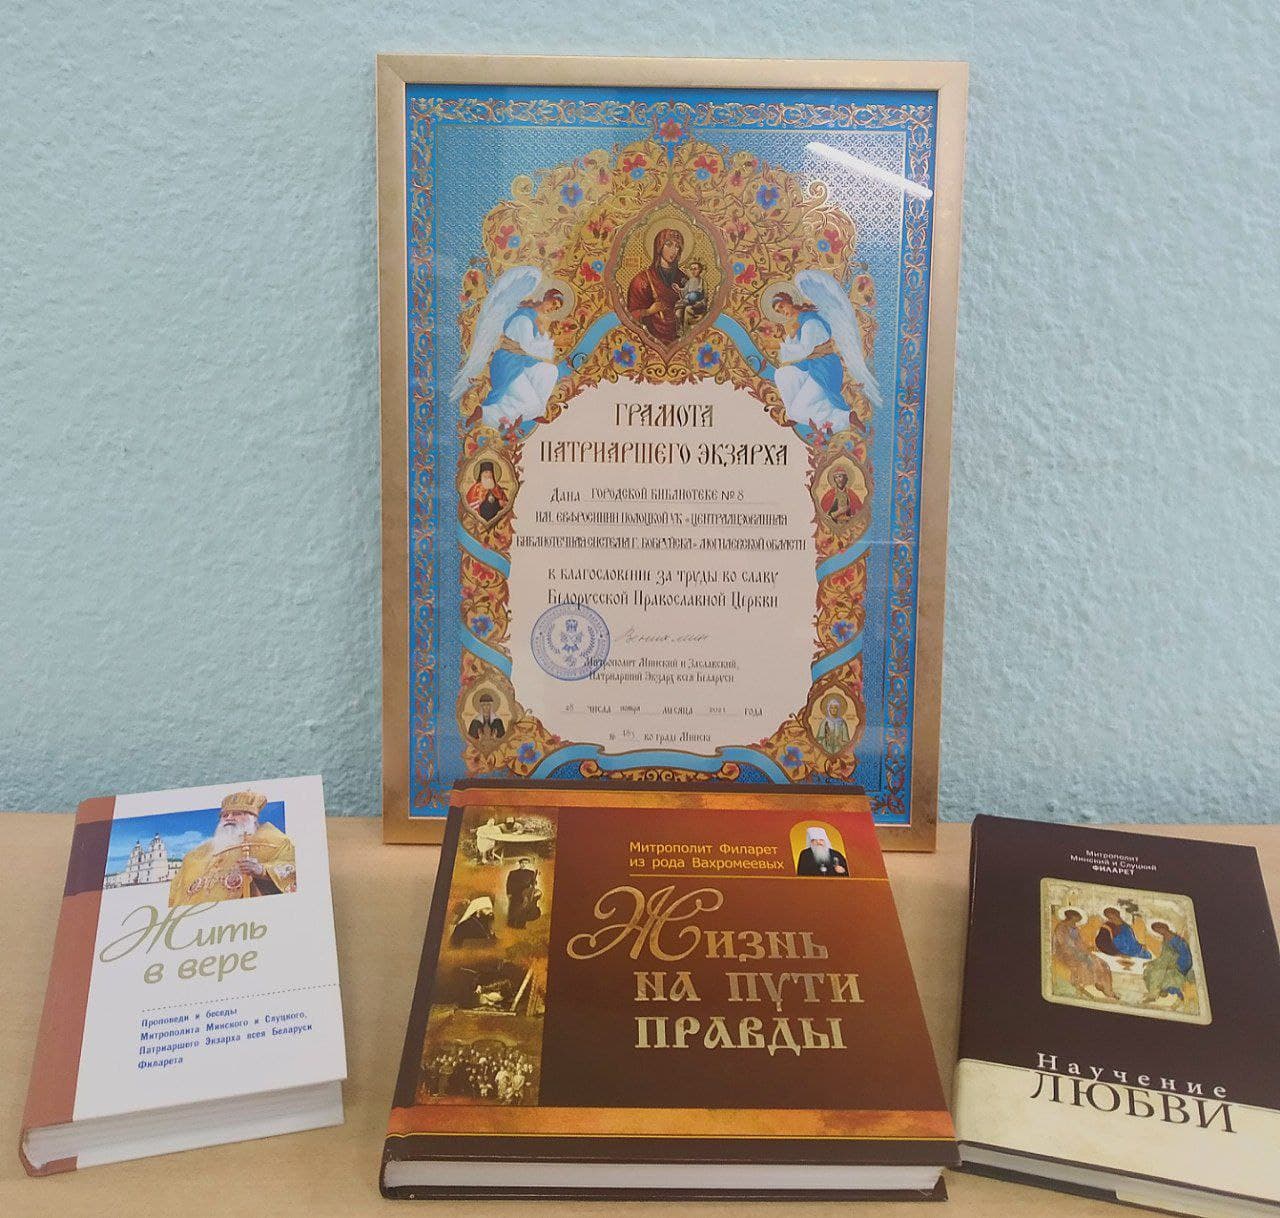 Бобруйская библиотека получила грамоту Патриаршего экзарха всея Беларуси